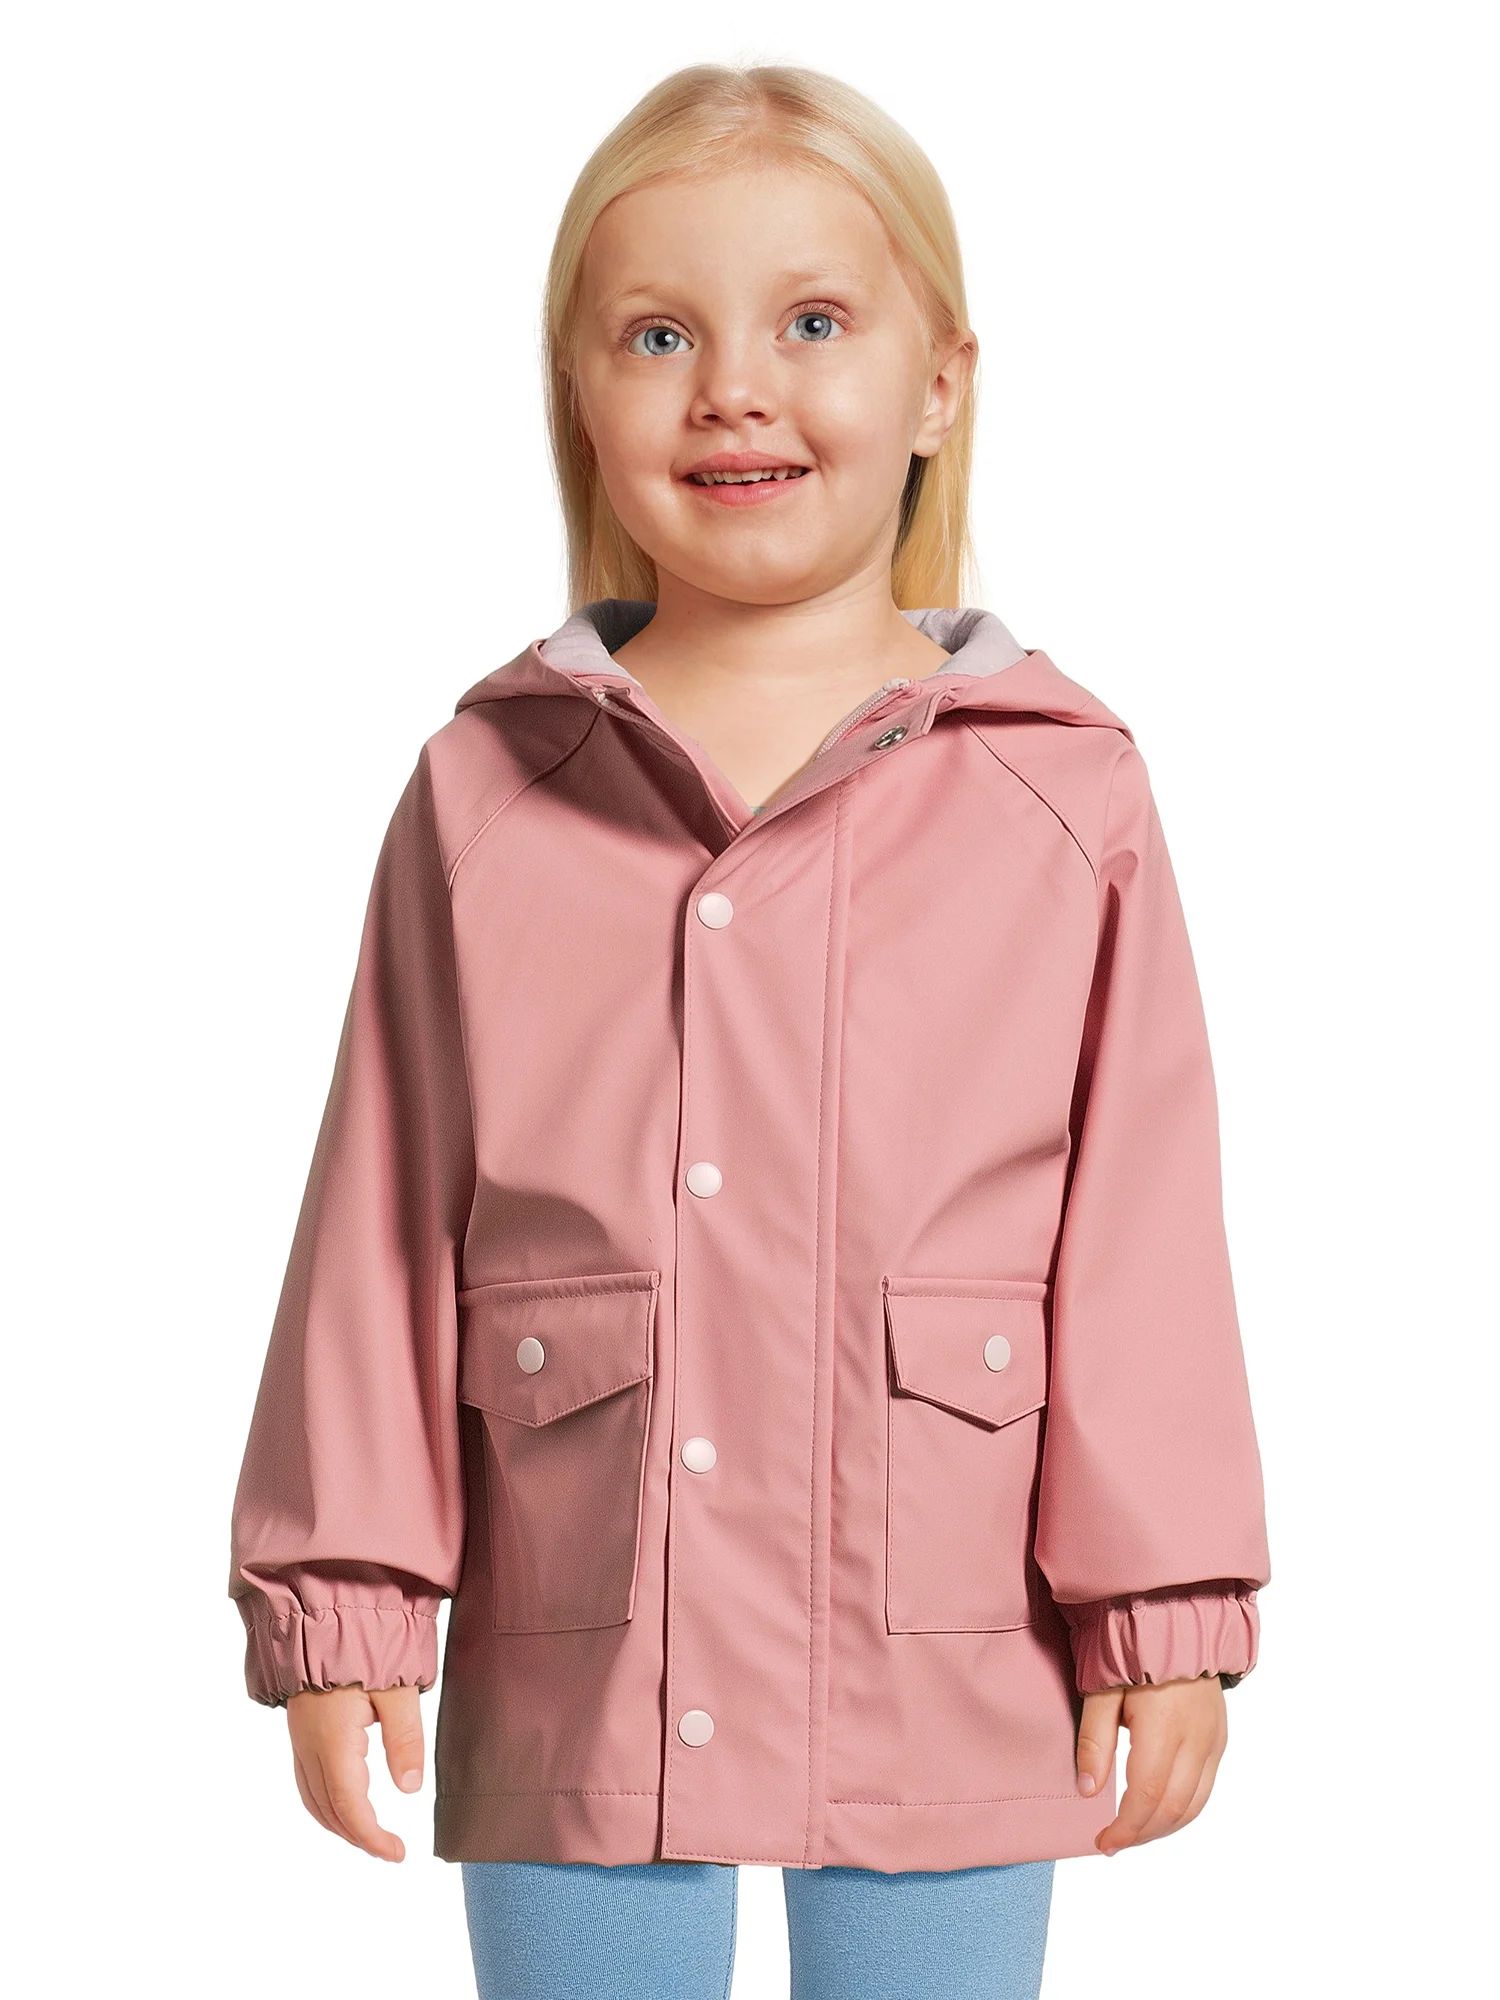 Wonder Nation Toddler Rain Jacket, Sizes 12M-5T | Walmart (US)